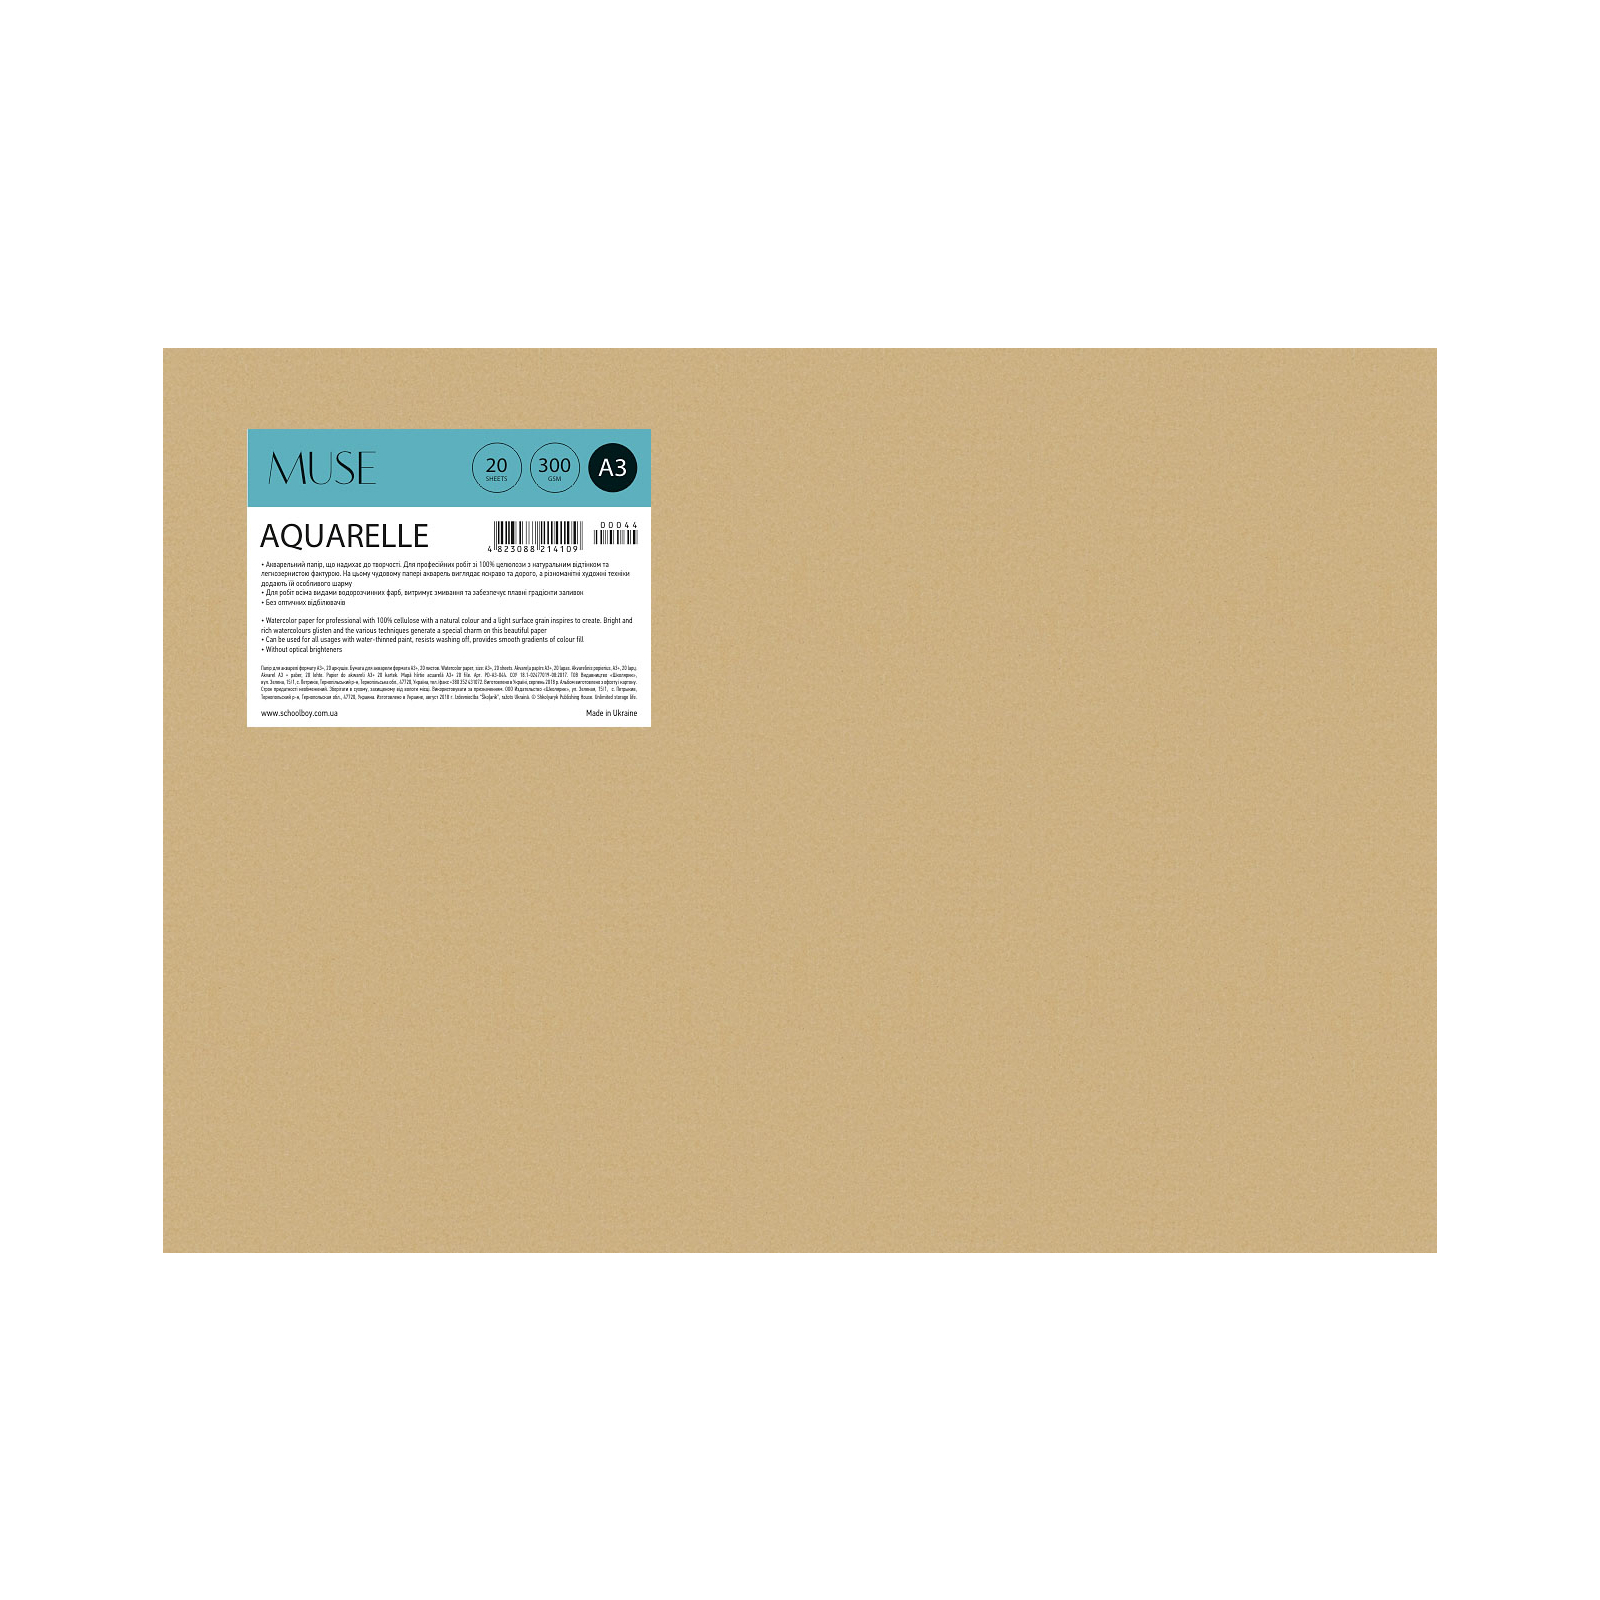 Бумага для рисования Школярик для акварели MUSE, A3 20 листов 300г/м2 (PD-A3-044)